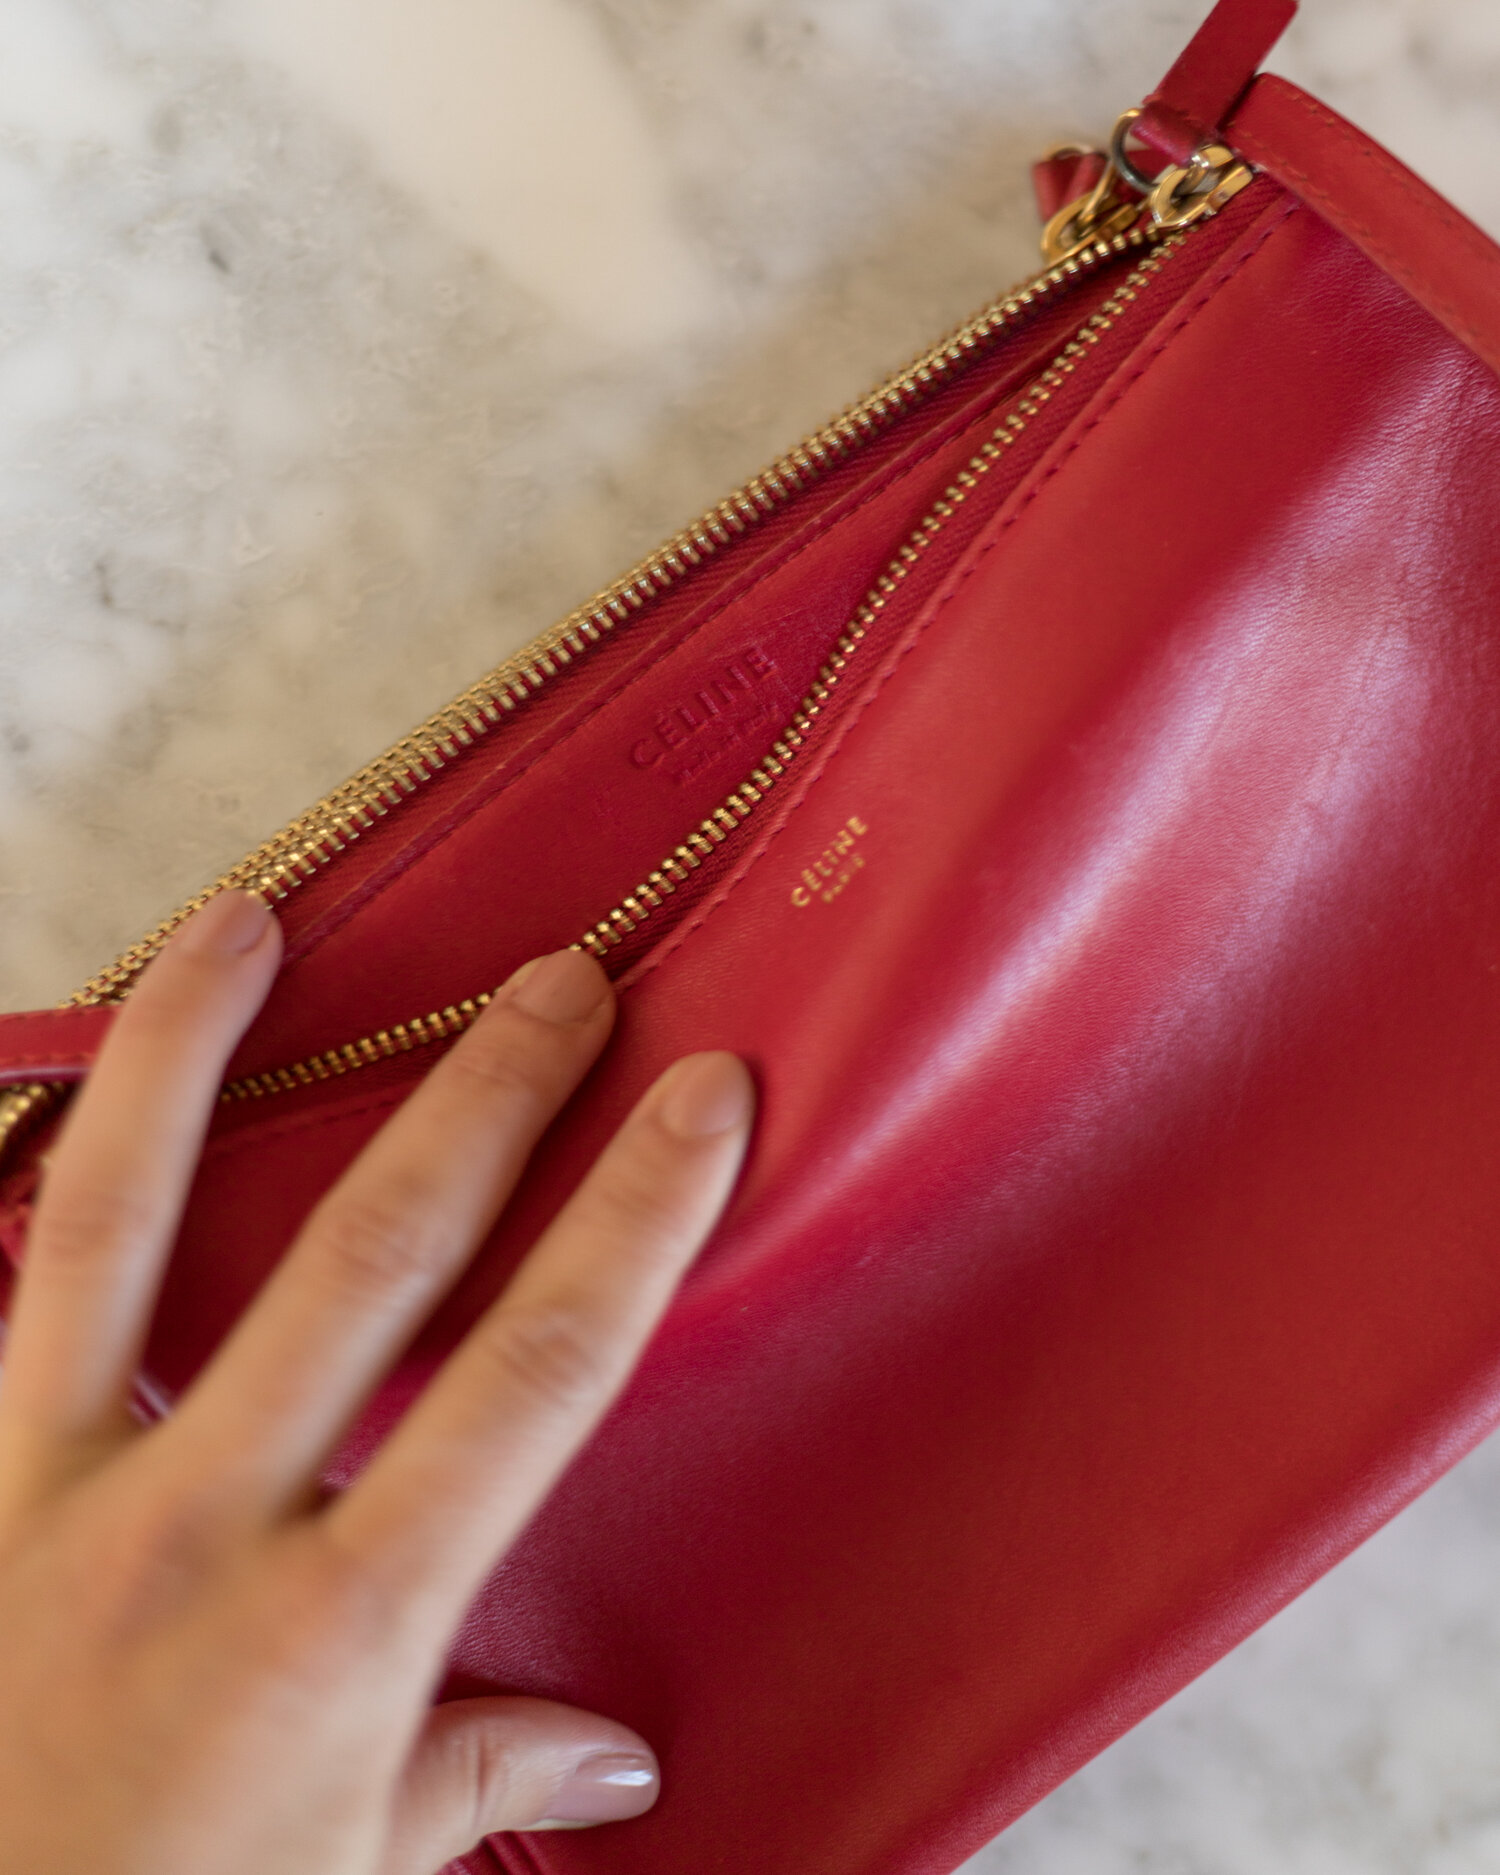 Celine Pre-owned Women's Leather Wallet